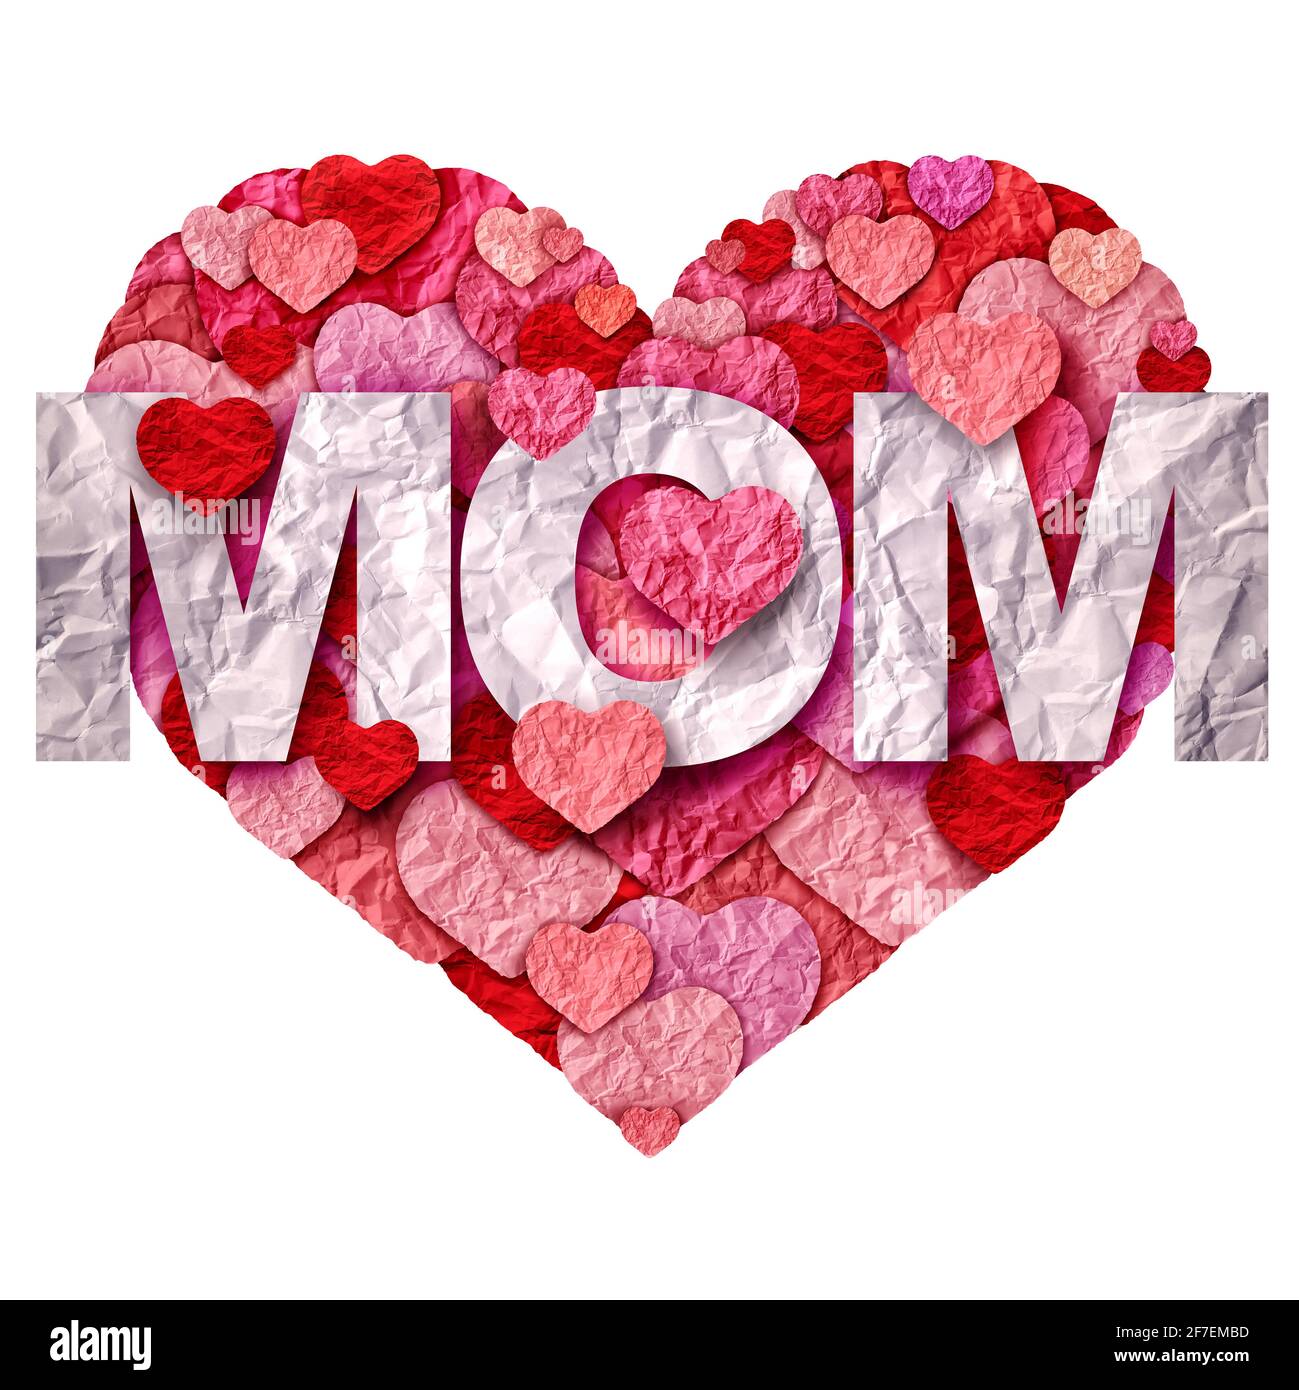 Salutation et célébration de la Fête des mères ou amour pour maman dans un style d'illustration 3D. Banque D'Images